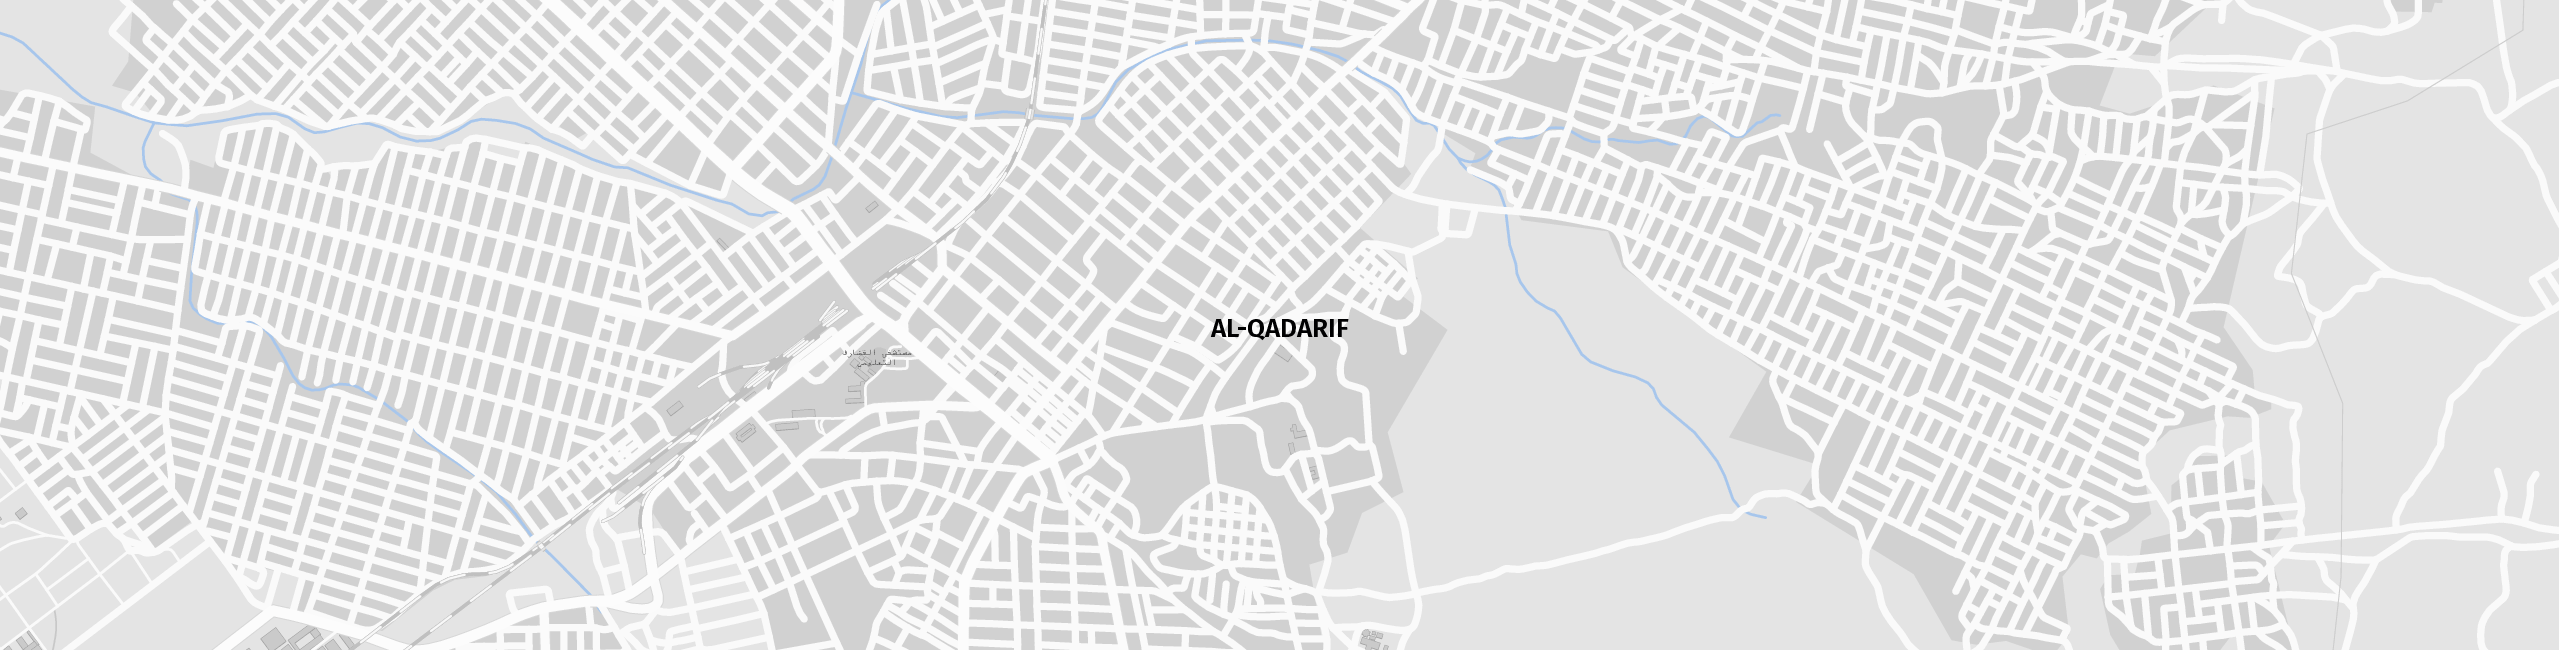 Stadtplan al Qadarif zum Downloaden.